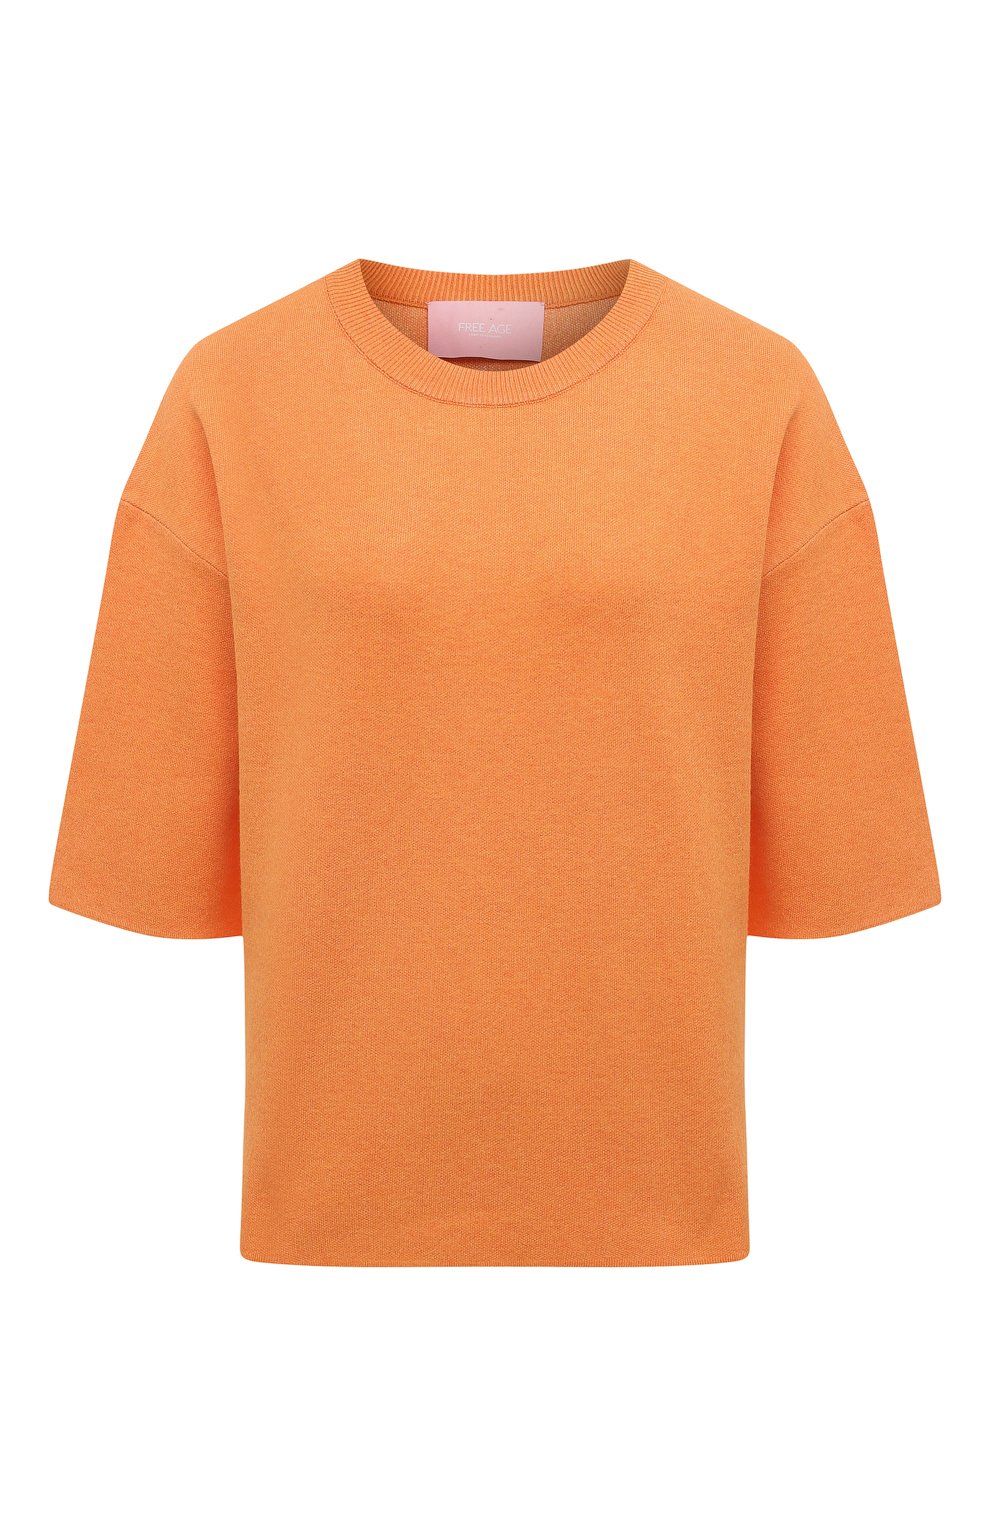 Женский пуловер из вискозы FREEAGE оранжевого цвета, арт. S22.JM201.7080.805 | Фото 1 (Длина (для топов): Стандартные; Материал внешний: Вискоза; Женское Кросс-КТ: Пуловер-одежда; Рукава: 3/4; Стили: Кэжуэл)